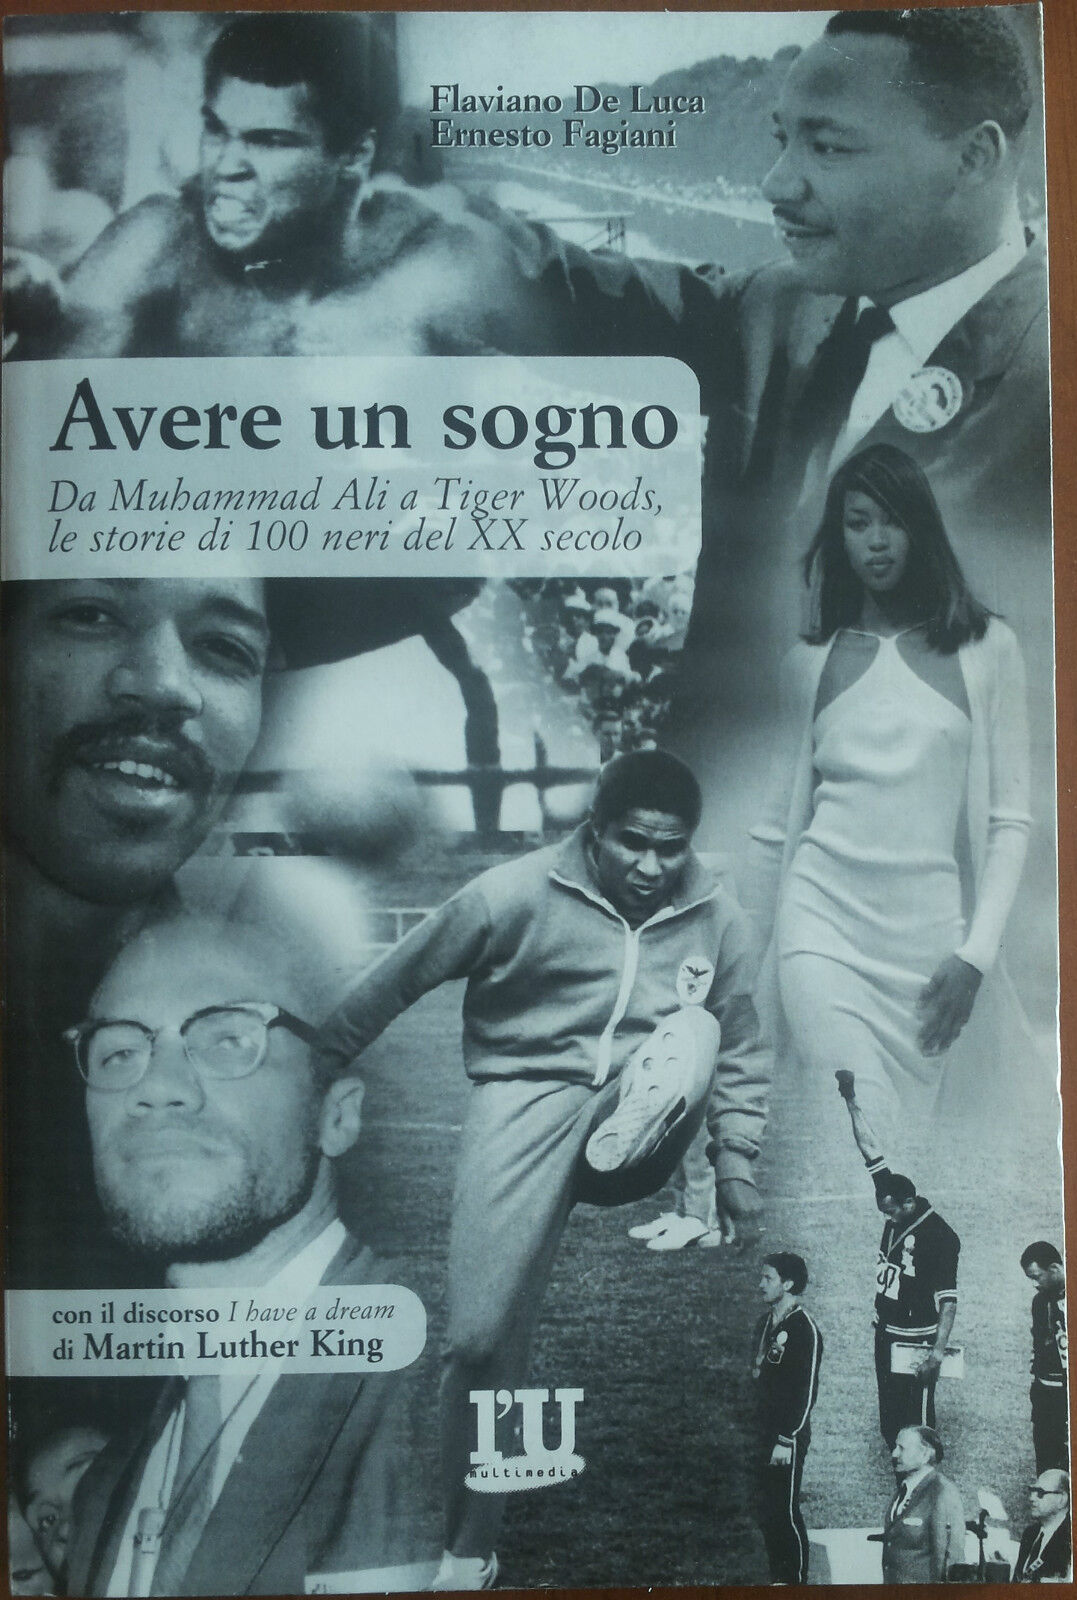 Avere un sogno - Flaviano De Luca, Ernesto Fagiani - Multimedia,1999 - A